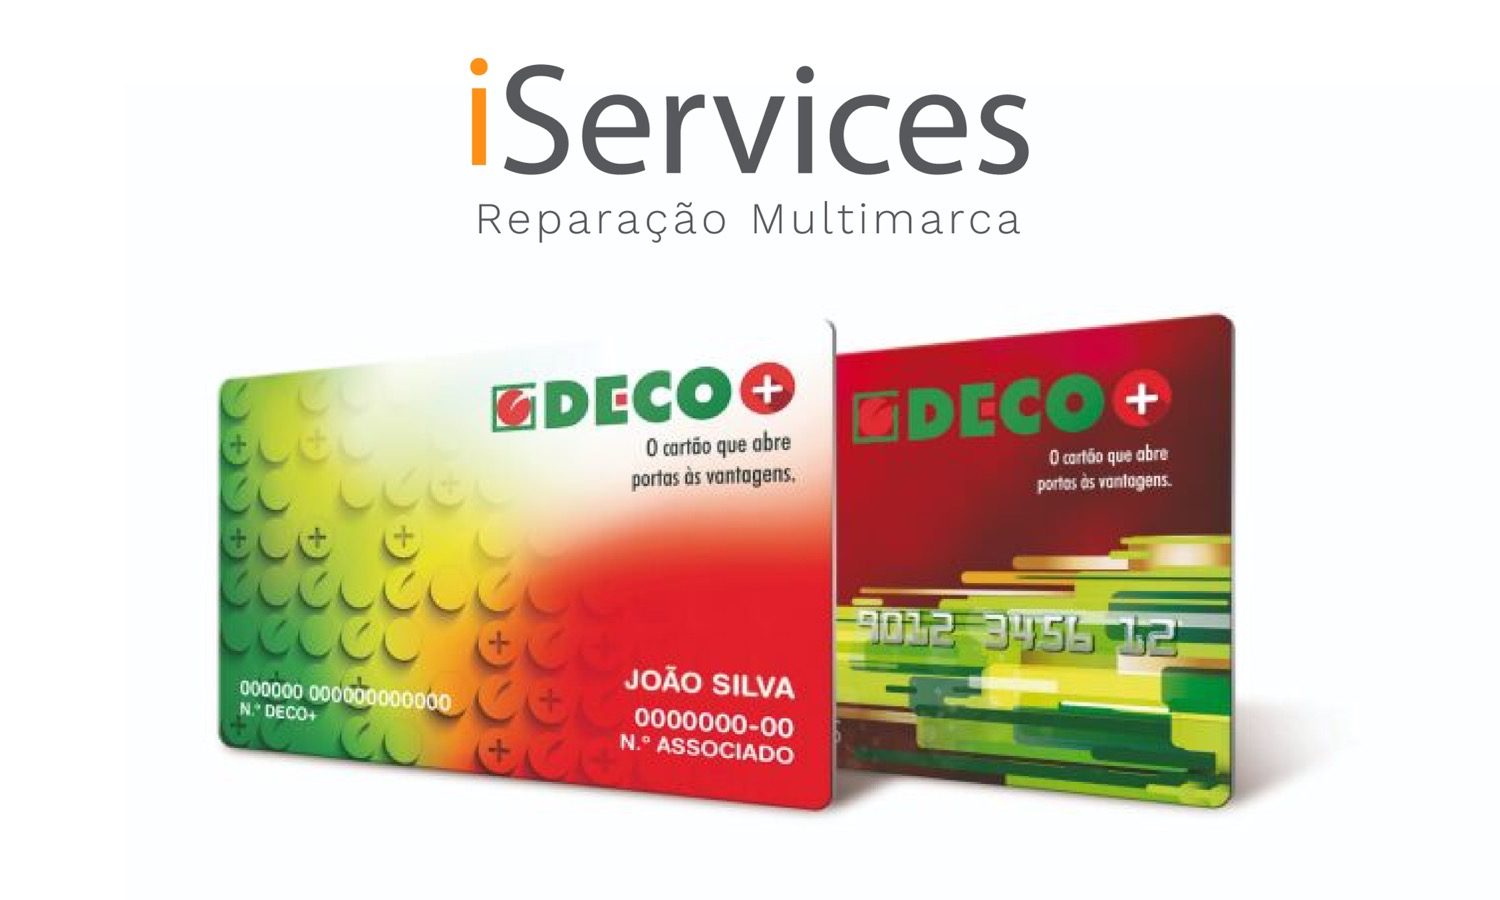 iServices est partenaire DECO+